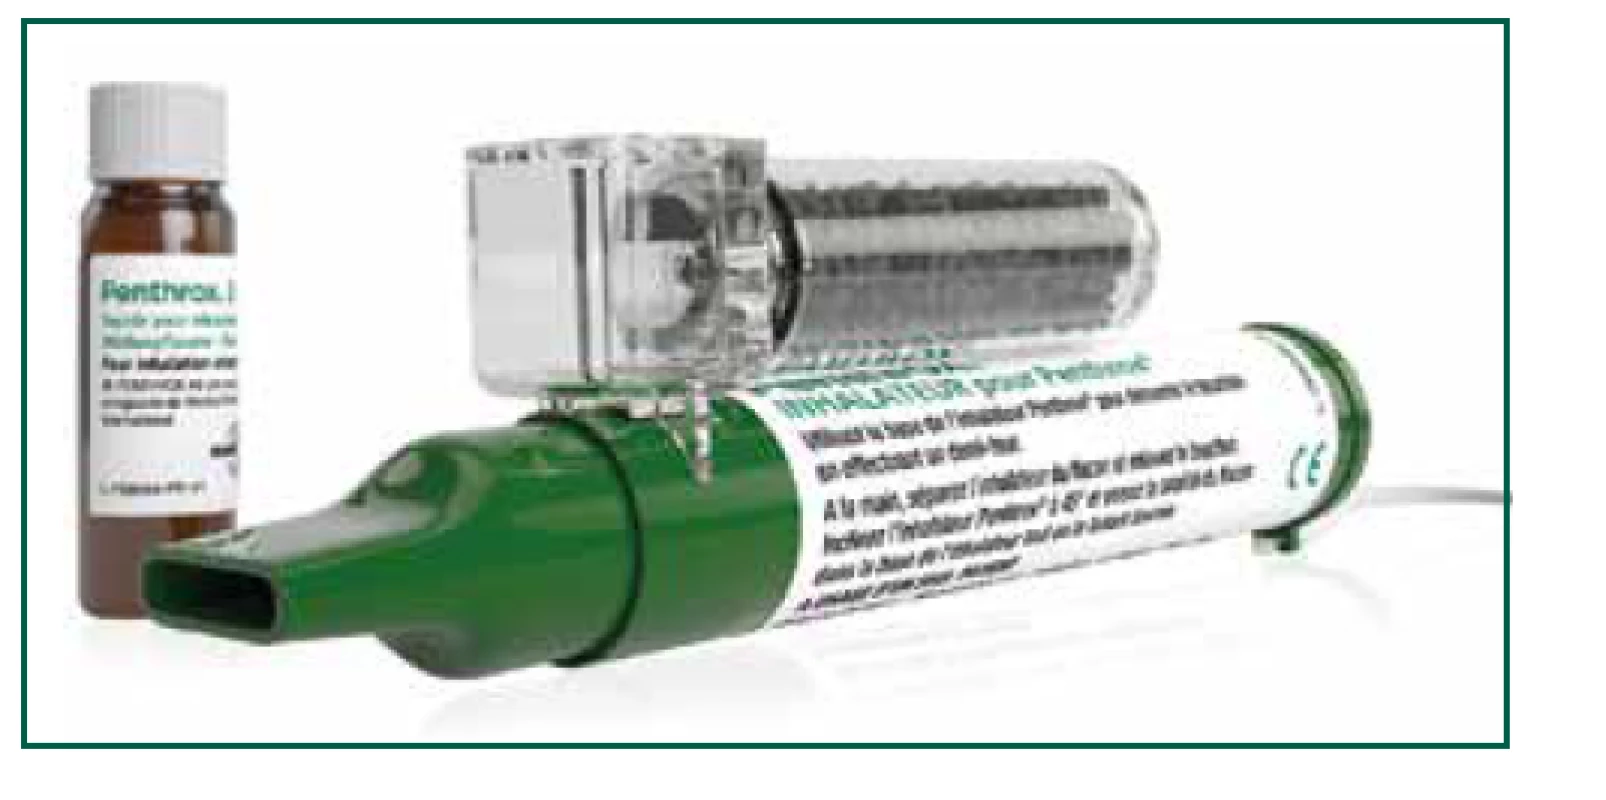 Inhalátor pro samoobslužnou analgezii methoxyfluranem. Zdroj:
Mundipharma, použito se svolením